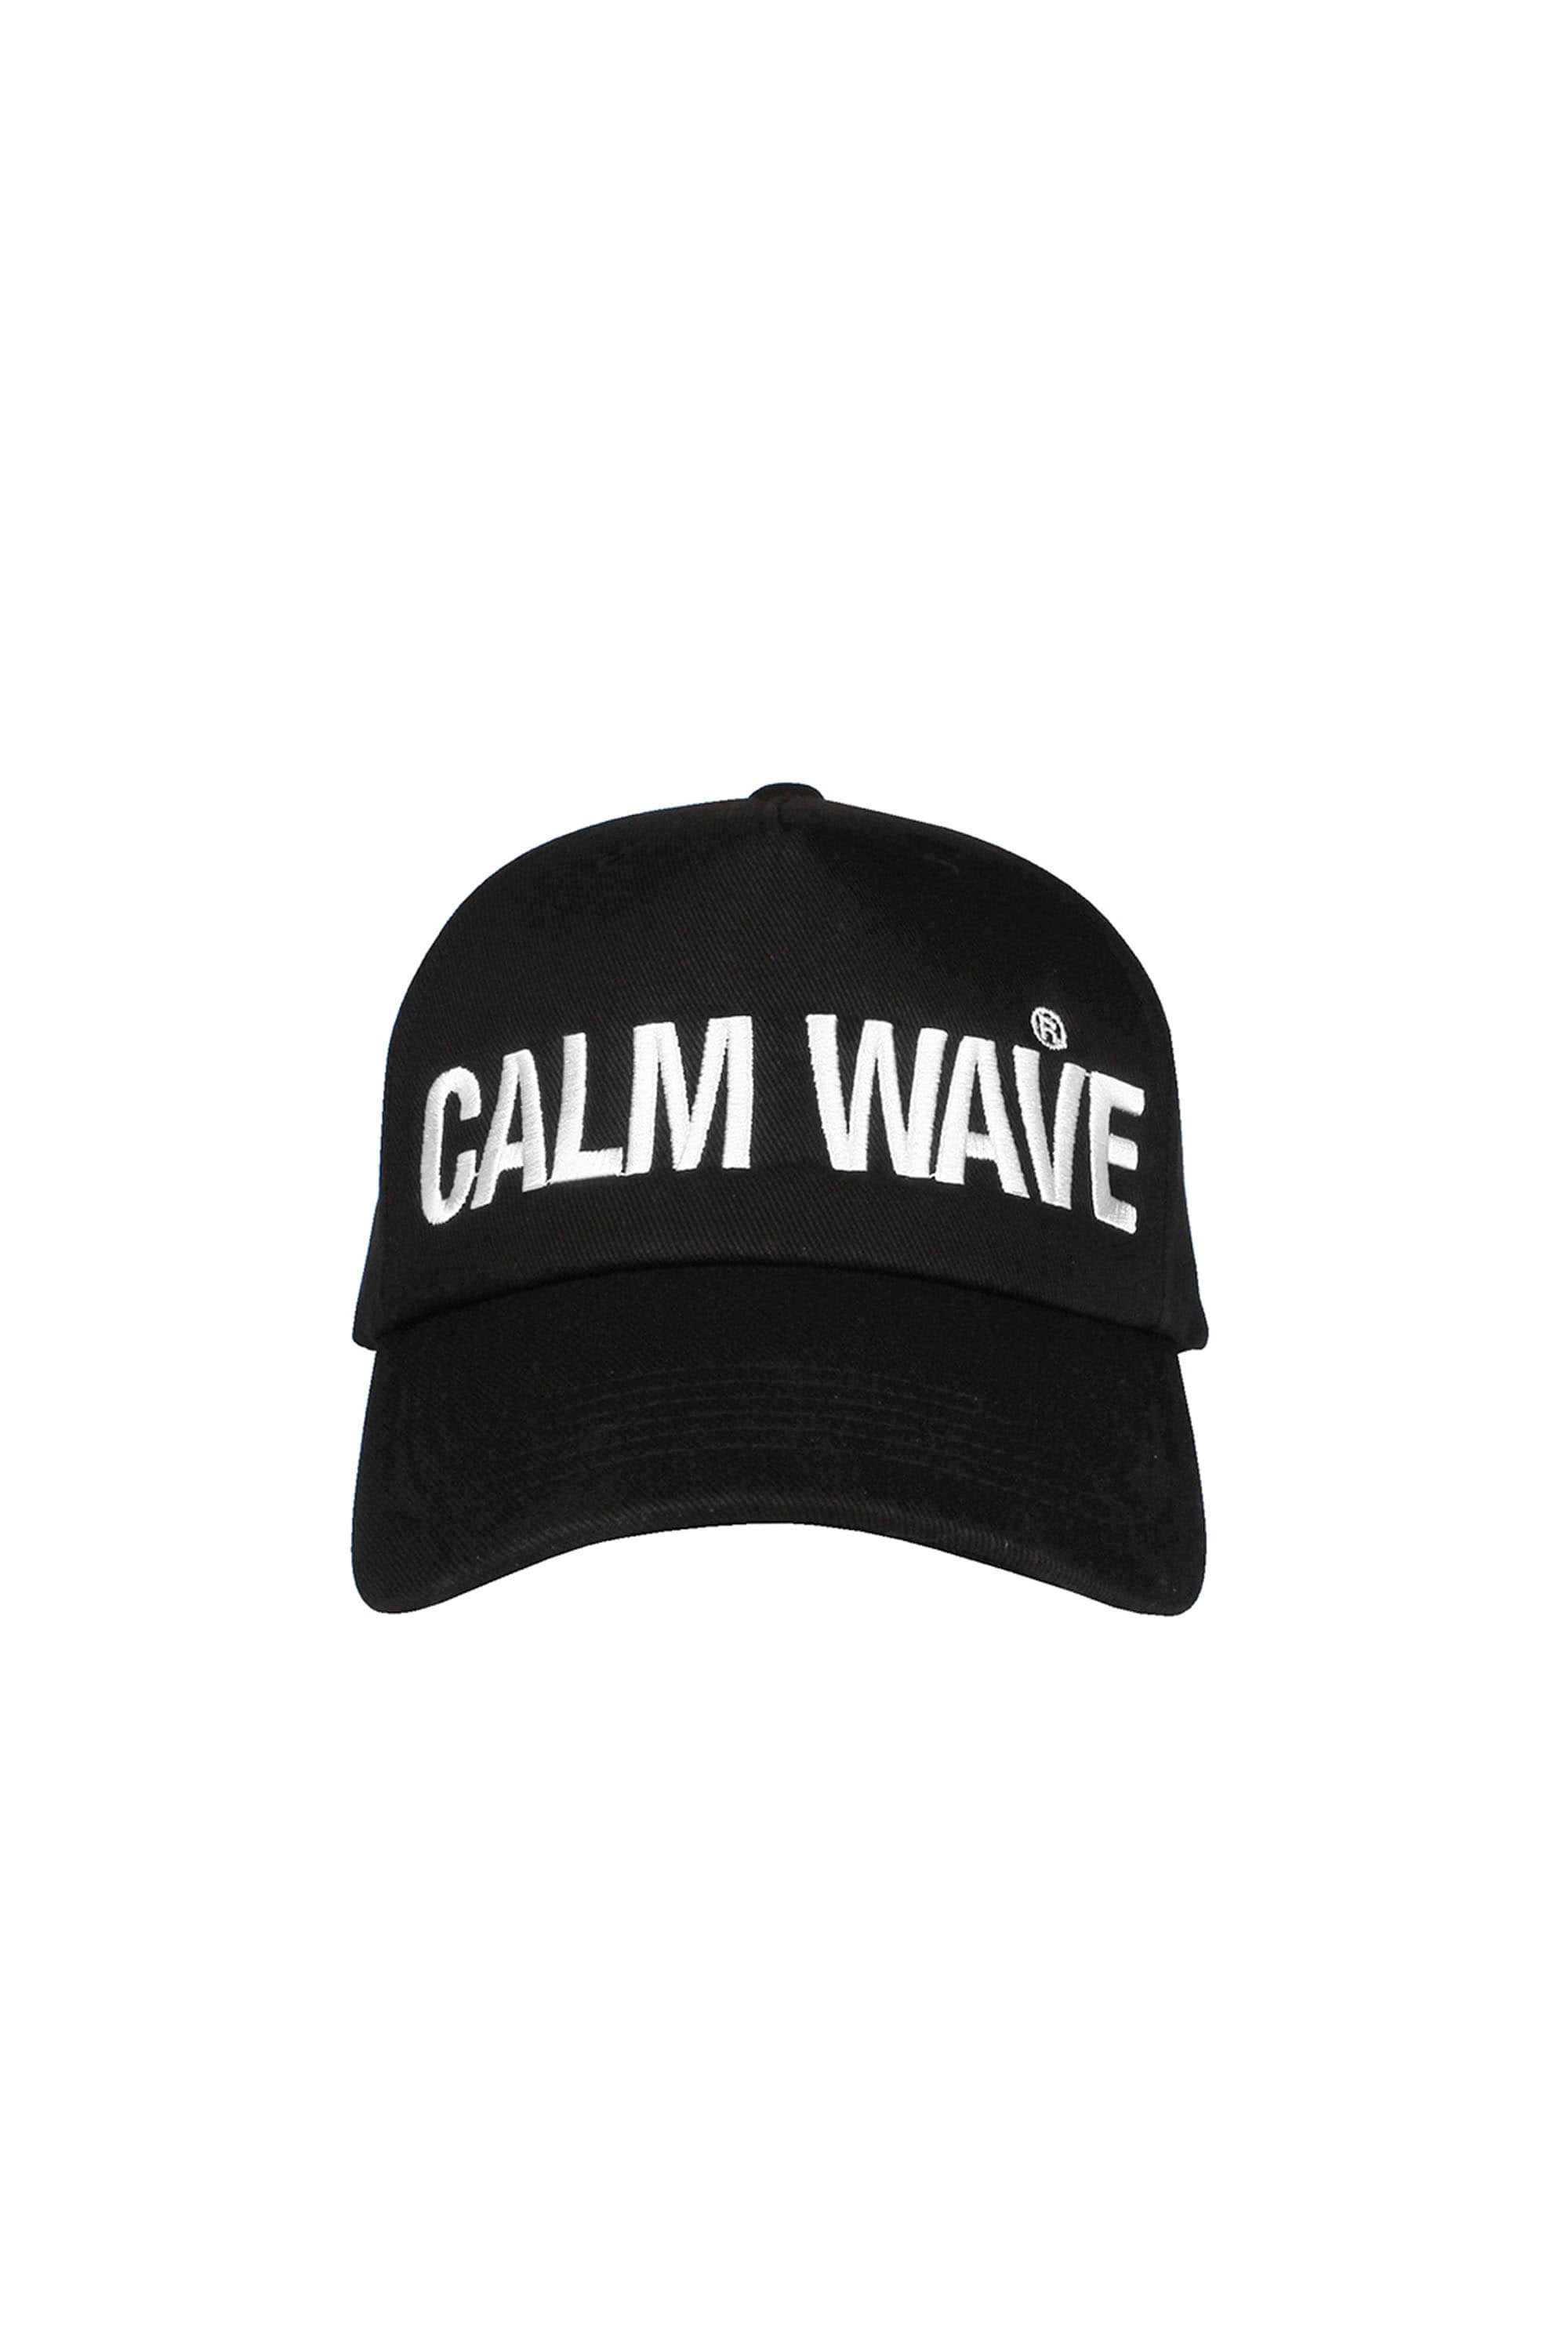 CALM WAVE 0000-CAP